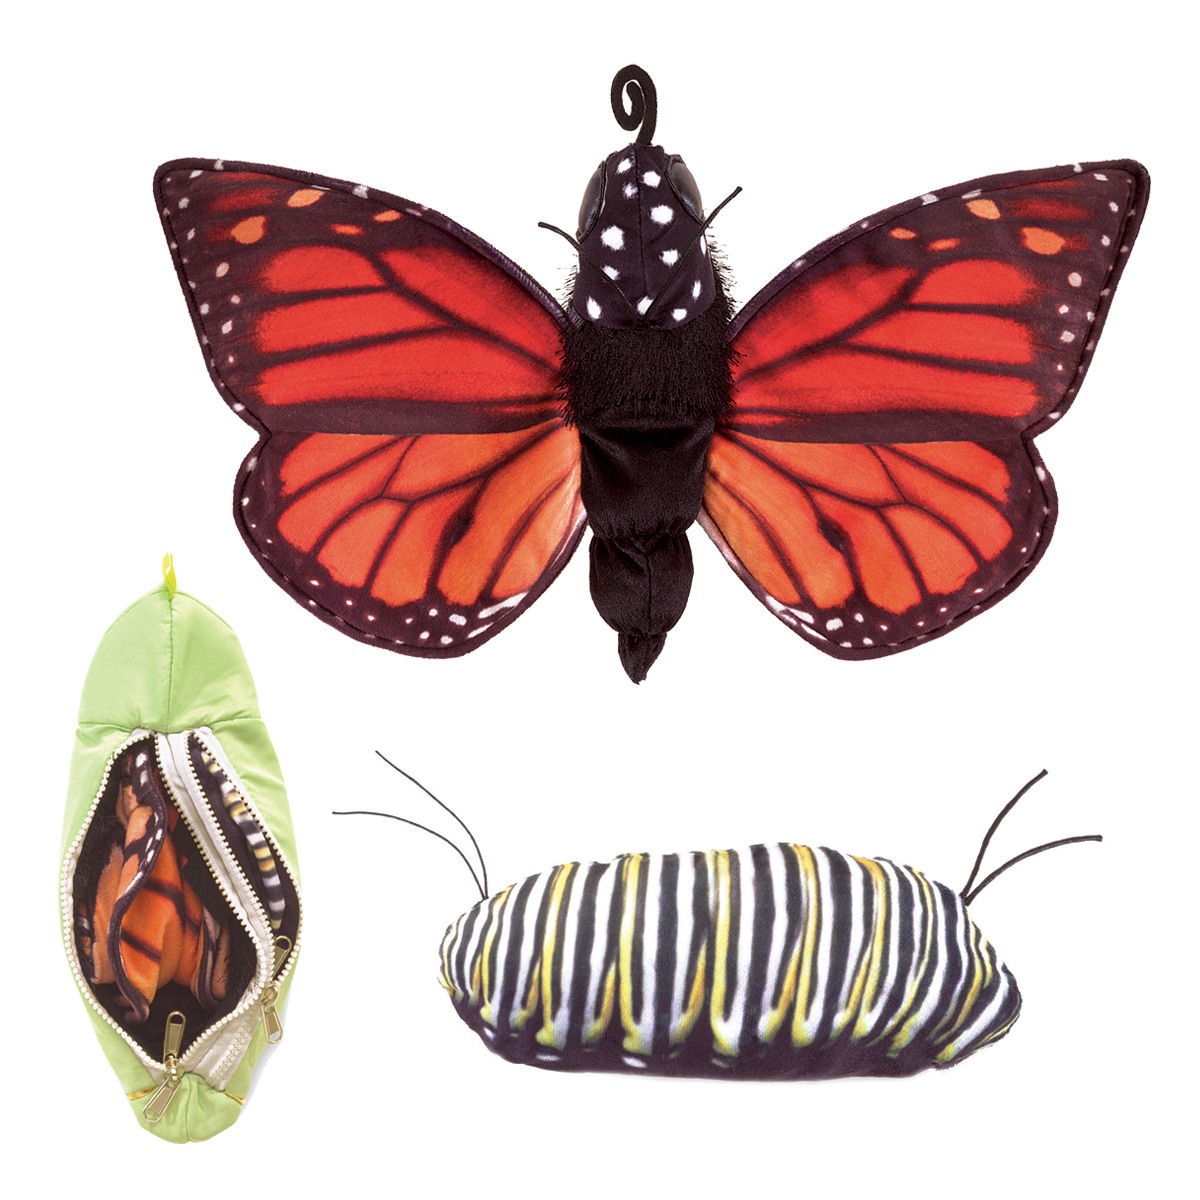 Metamorphose Schmetterling / Monarch Life Cycle - Metamorphose